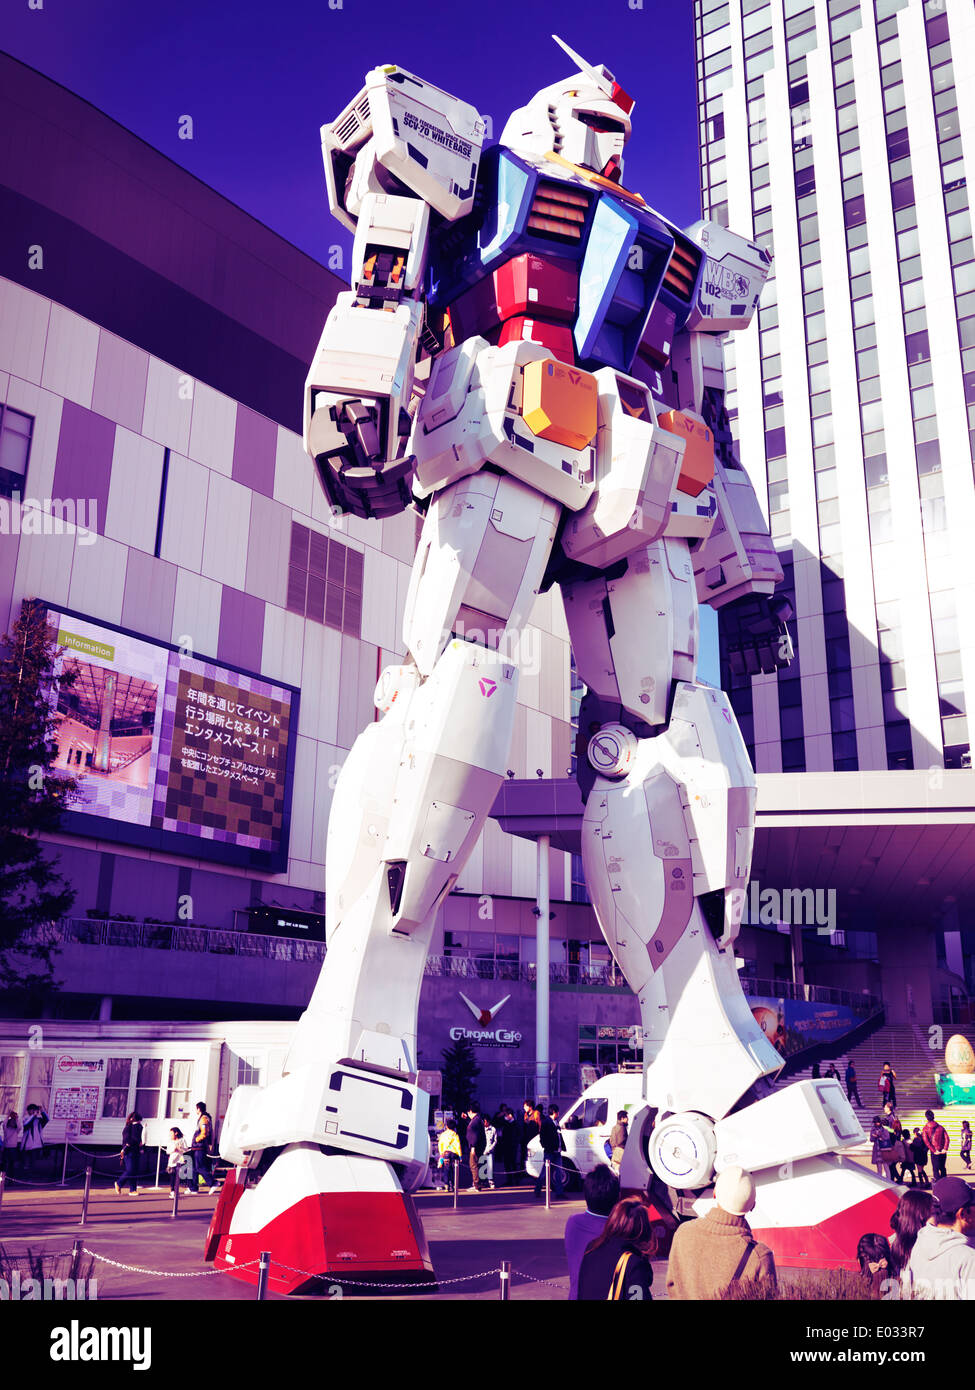 RX-78-2 Gundam robot géant lifesize statue devant Diver City, Odaiba, Tokyo, Japon. Photo traitée de façon artistique. Banque D'Images